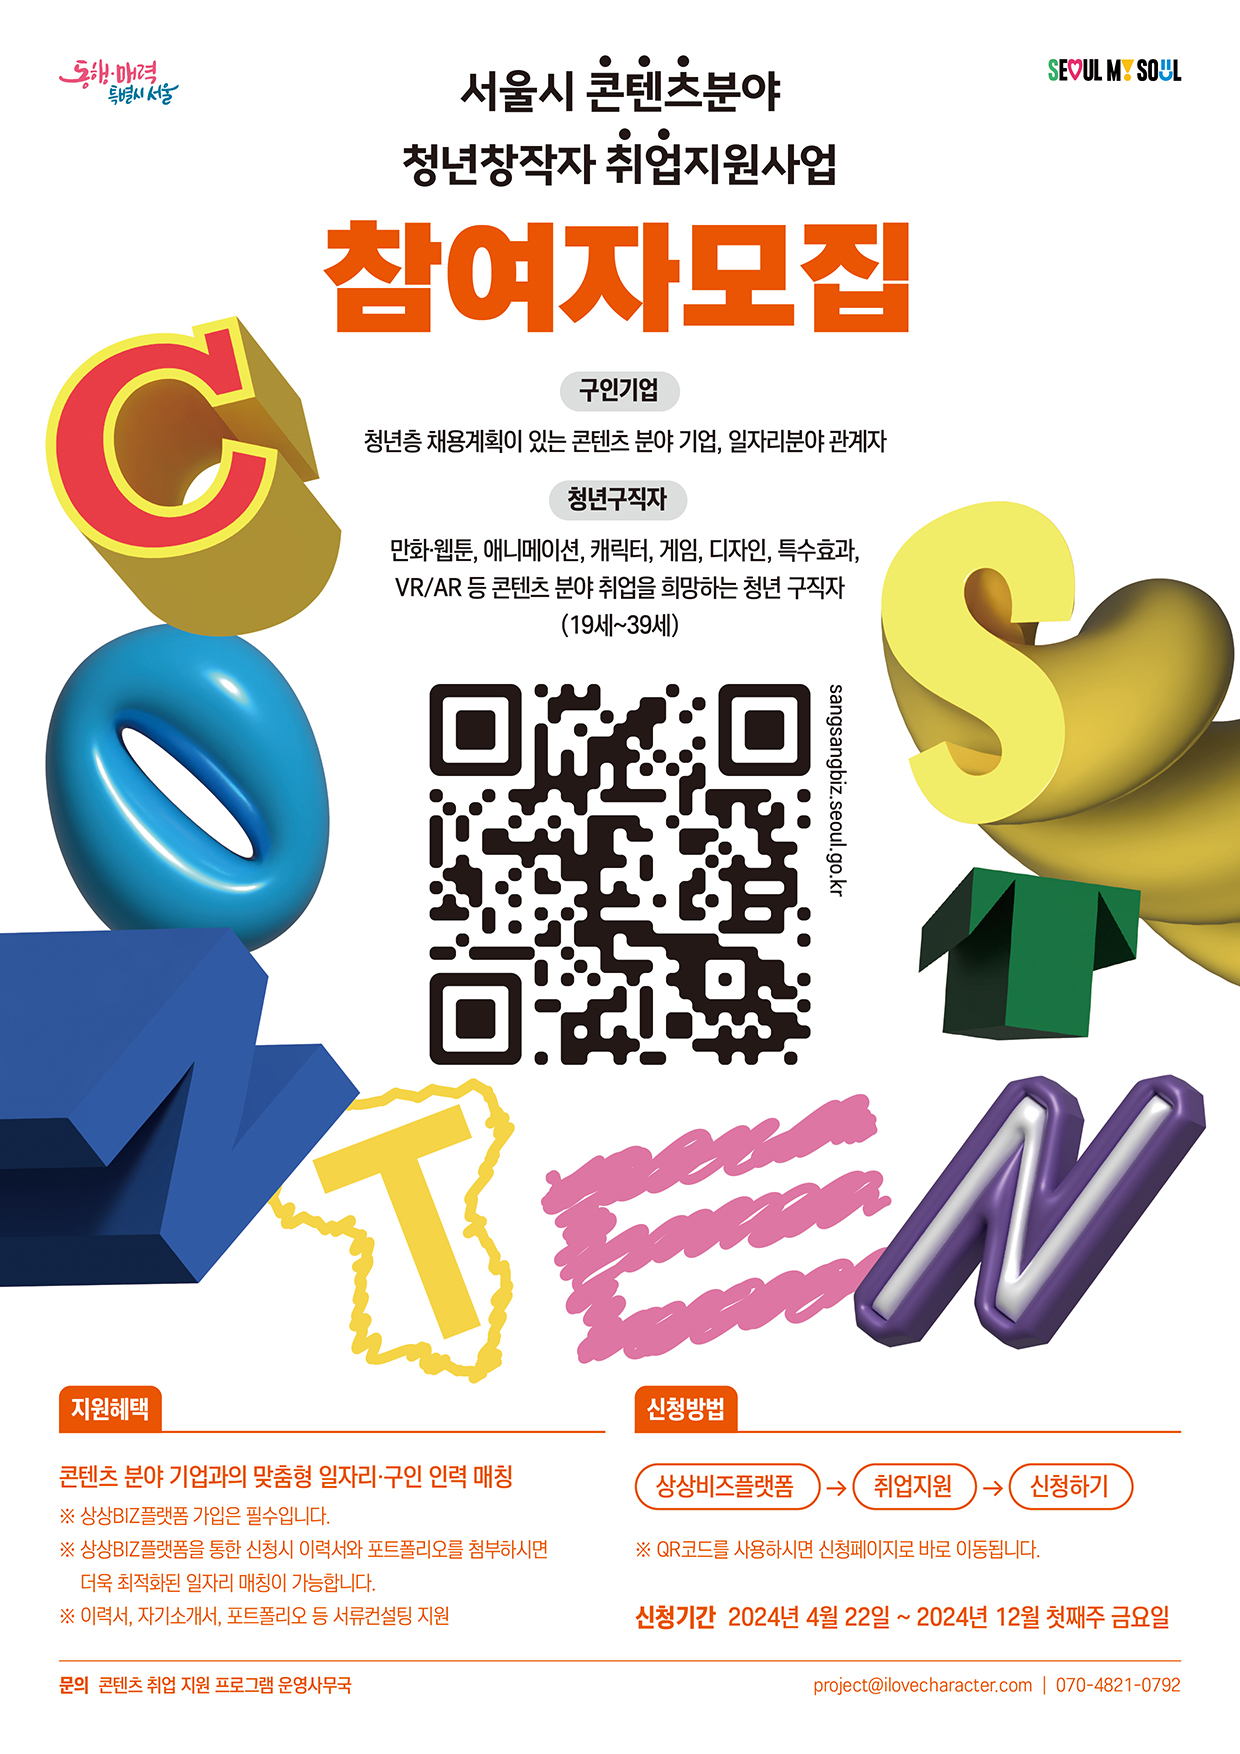 서울시 콘텐츠 분야 청년창작자 취업지원 사업 참여자 모집